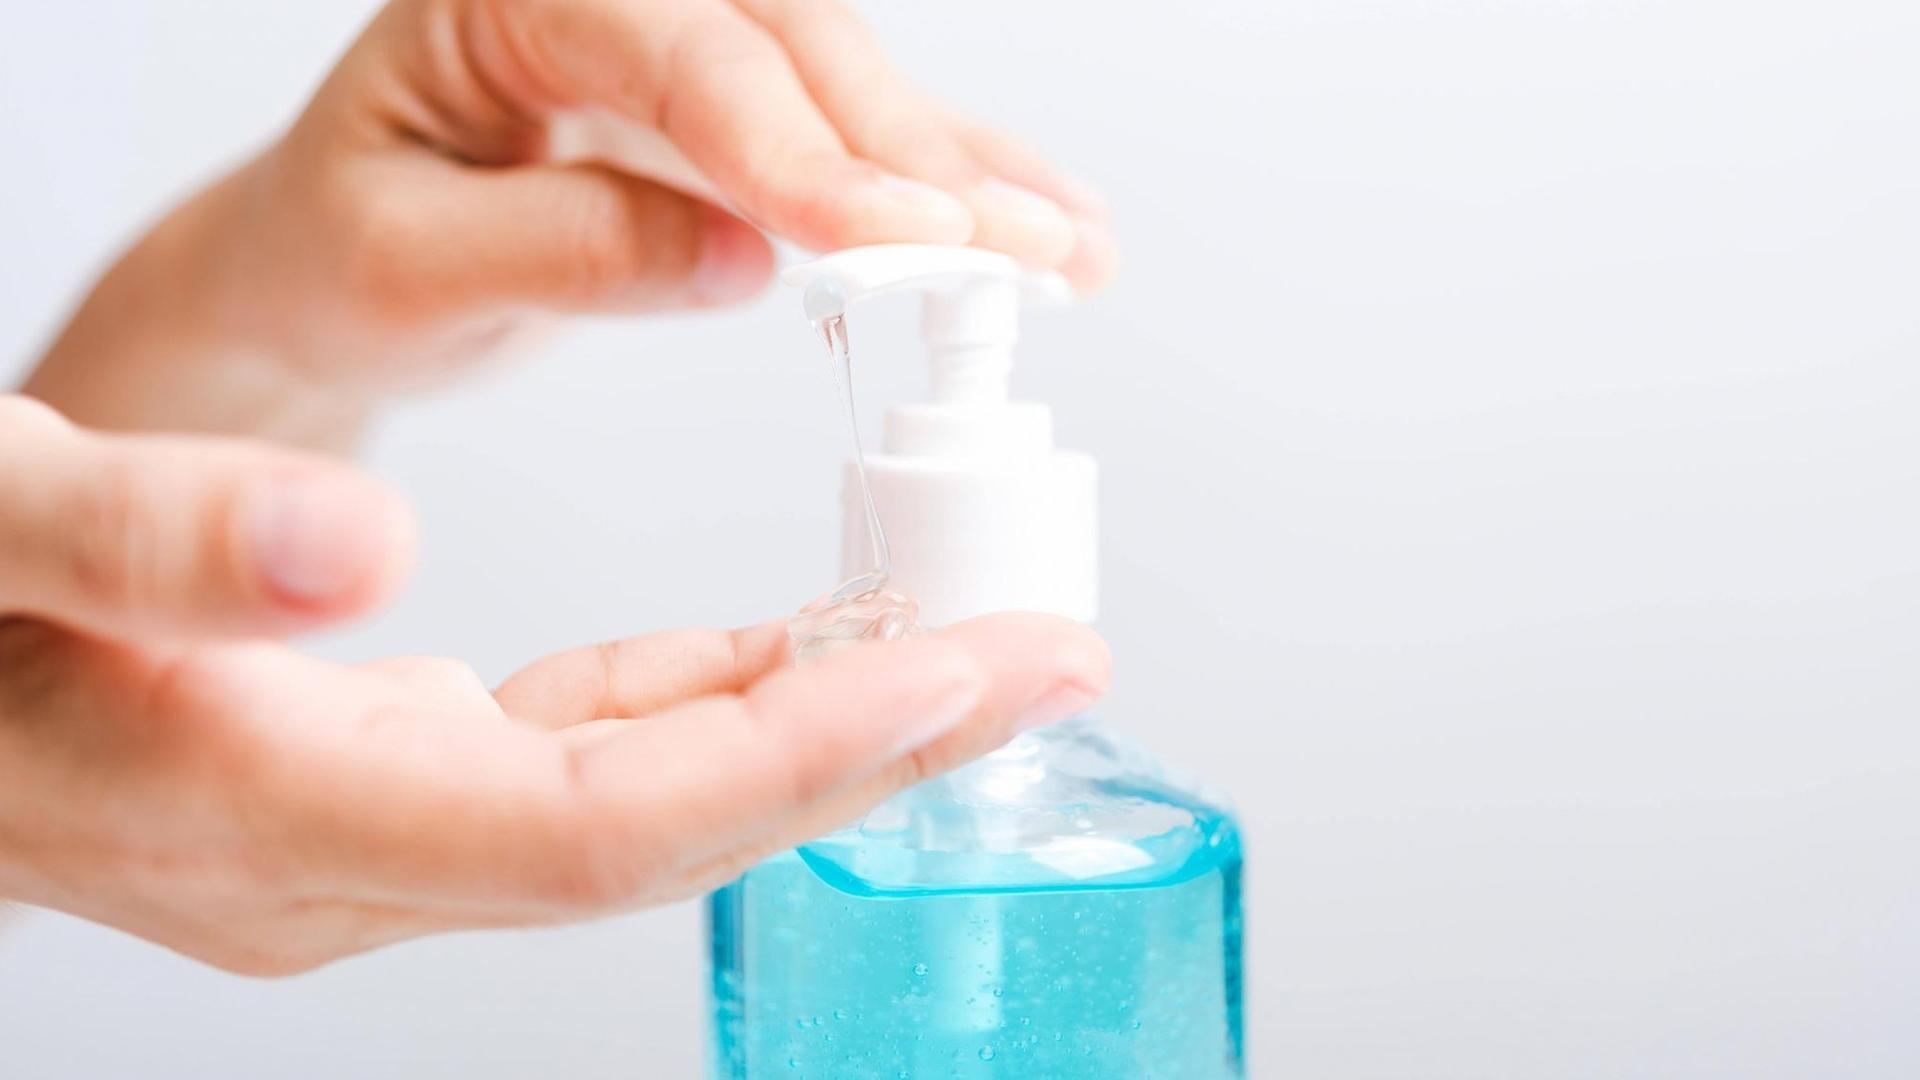 Eine Frau desinfiziert sich die Hände - Nahaufnahme der Hände mit einer Flasche Desinfektionsmittel.